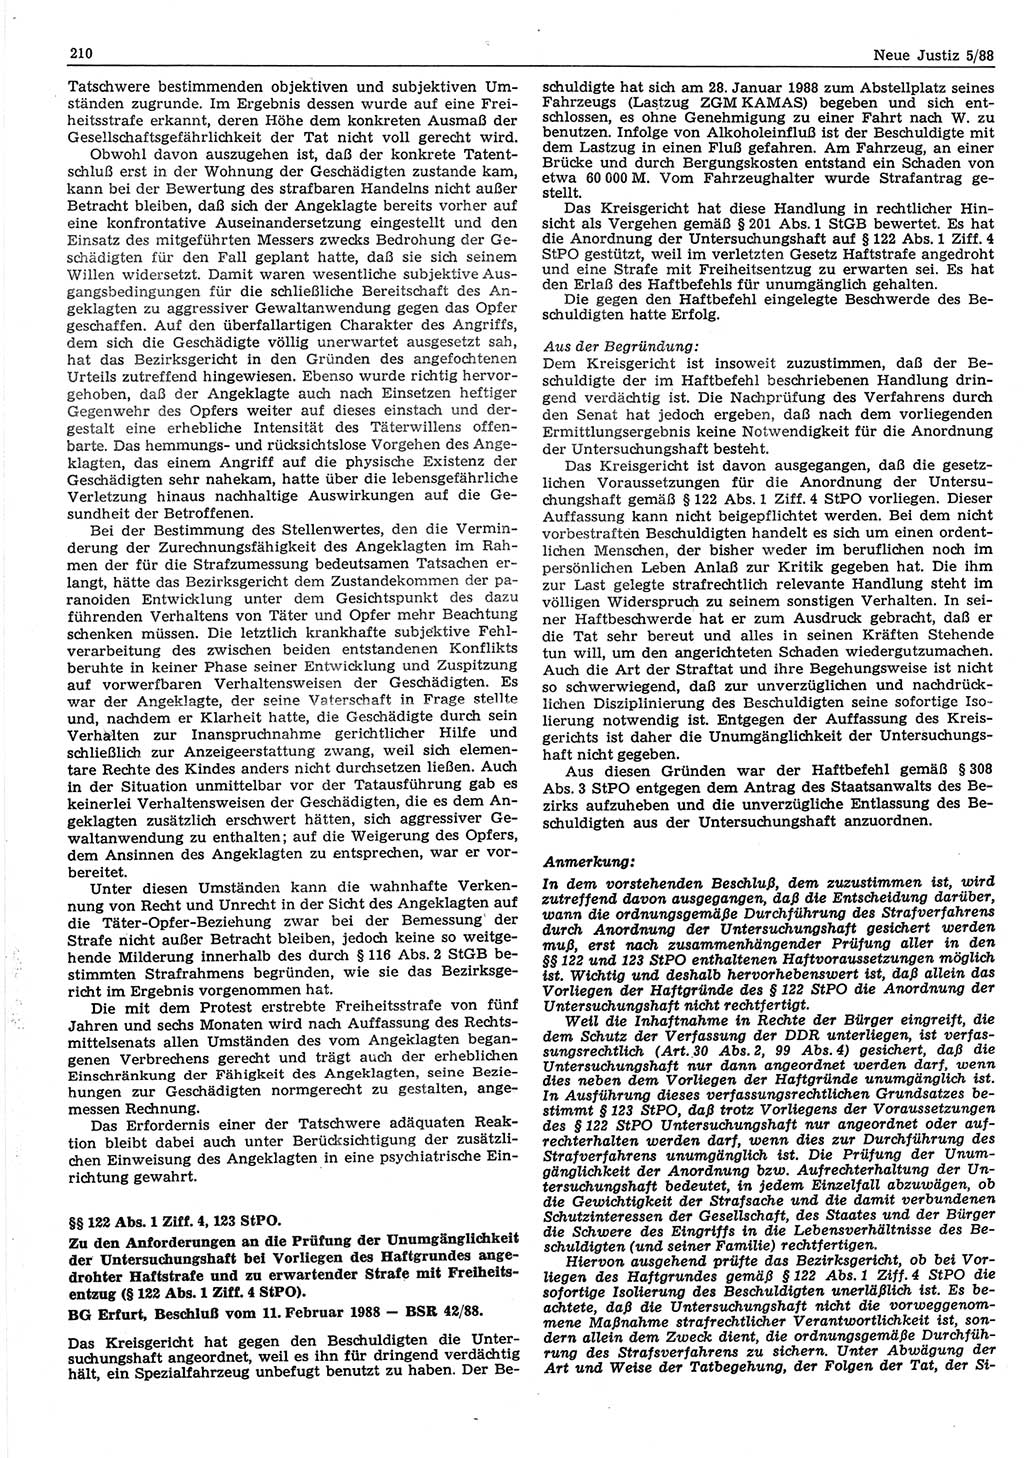 Neue Justiz (NJ), Zeitschrift für sozialistisches Recht und Gesetzlichkeit [Deutsche Demokratische Republik (DDR)], 42. Jahrgang 1988, Seite 210 (NJ DDR 1988, S. 210)